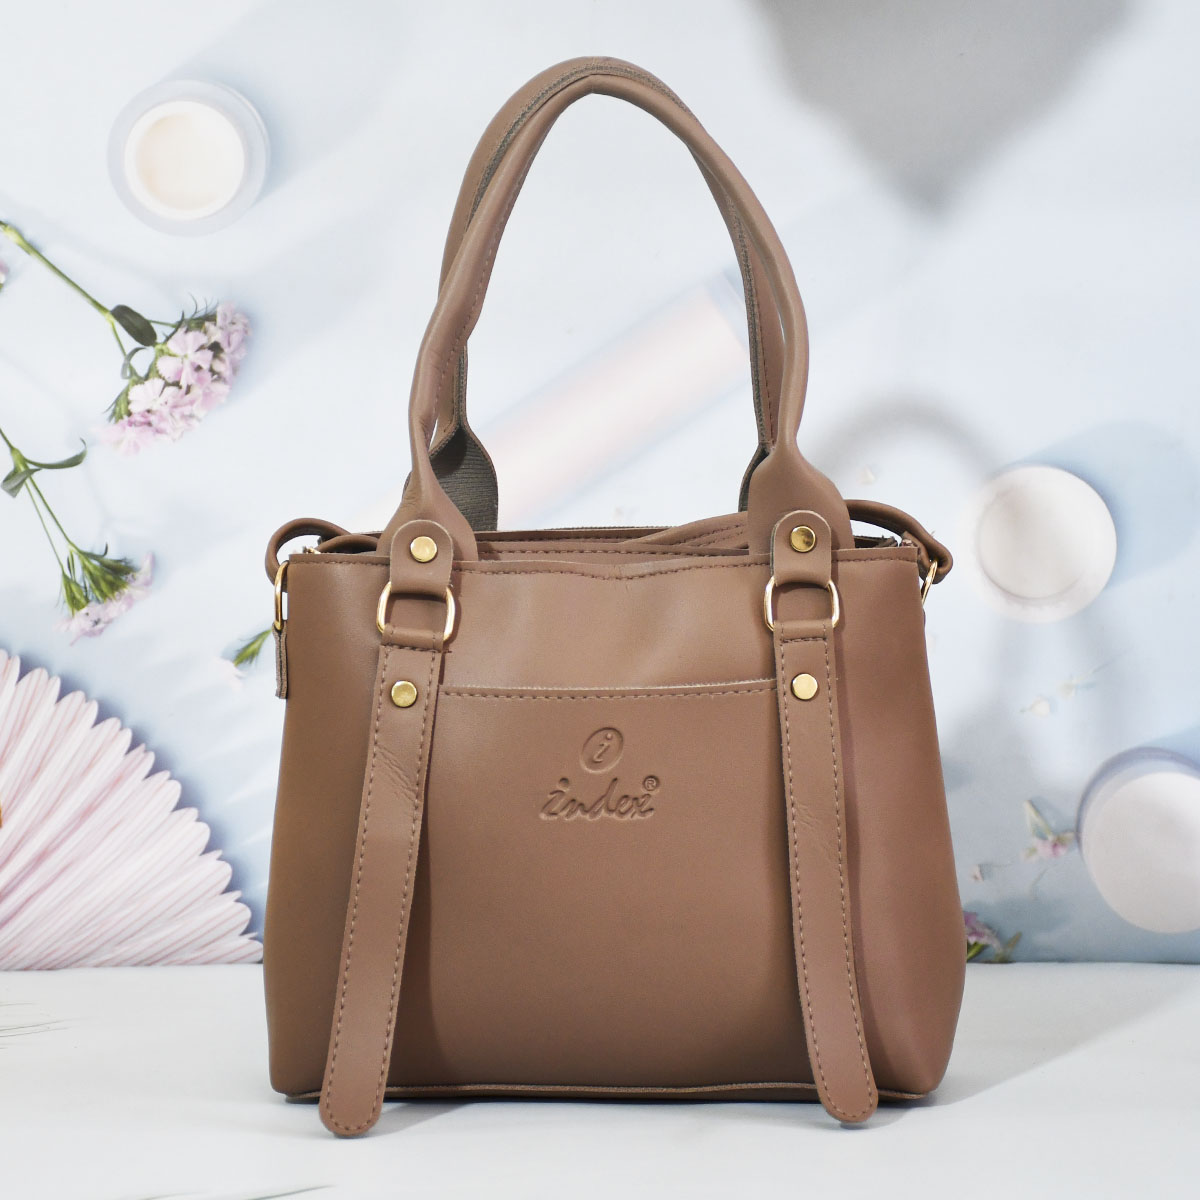 CoCopeaunt High Quality Leather Handbag Messenger Bag Luxury Women Bag  Designer Ladies Hand Bag Shoulder Bag Outlet Europe Casual Tote Bag -  Walmart.com